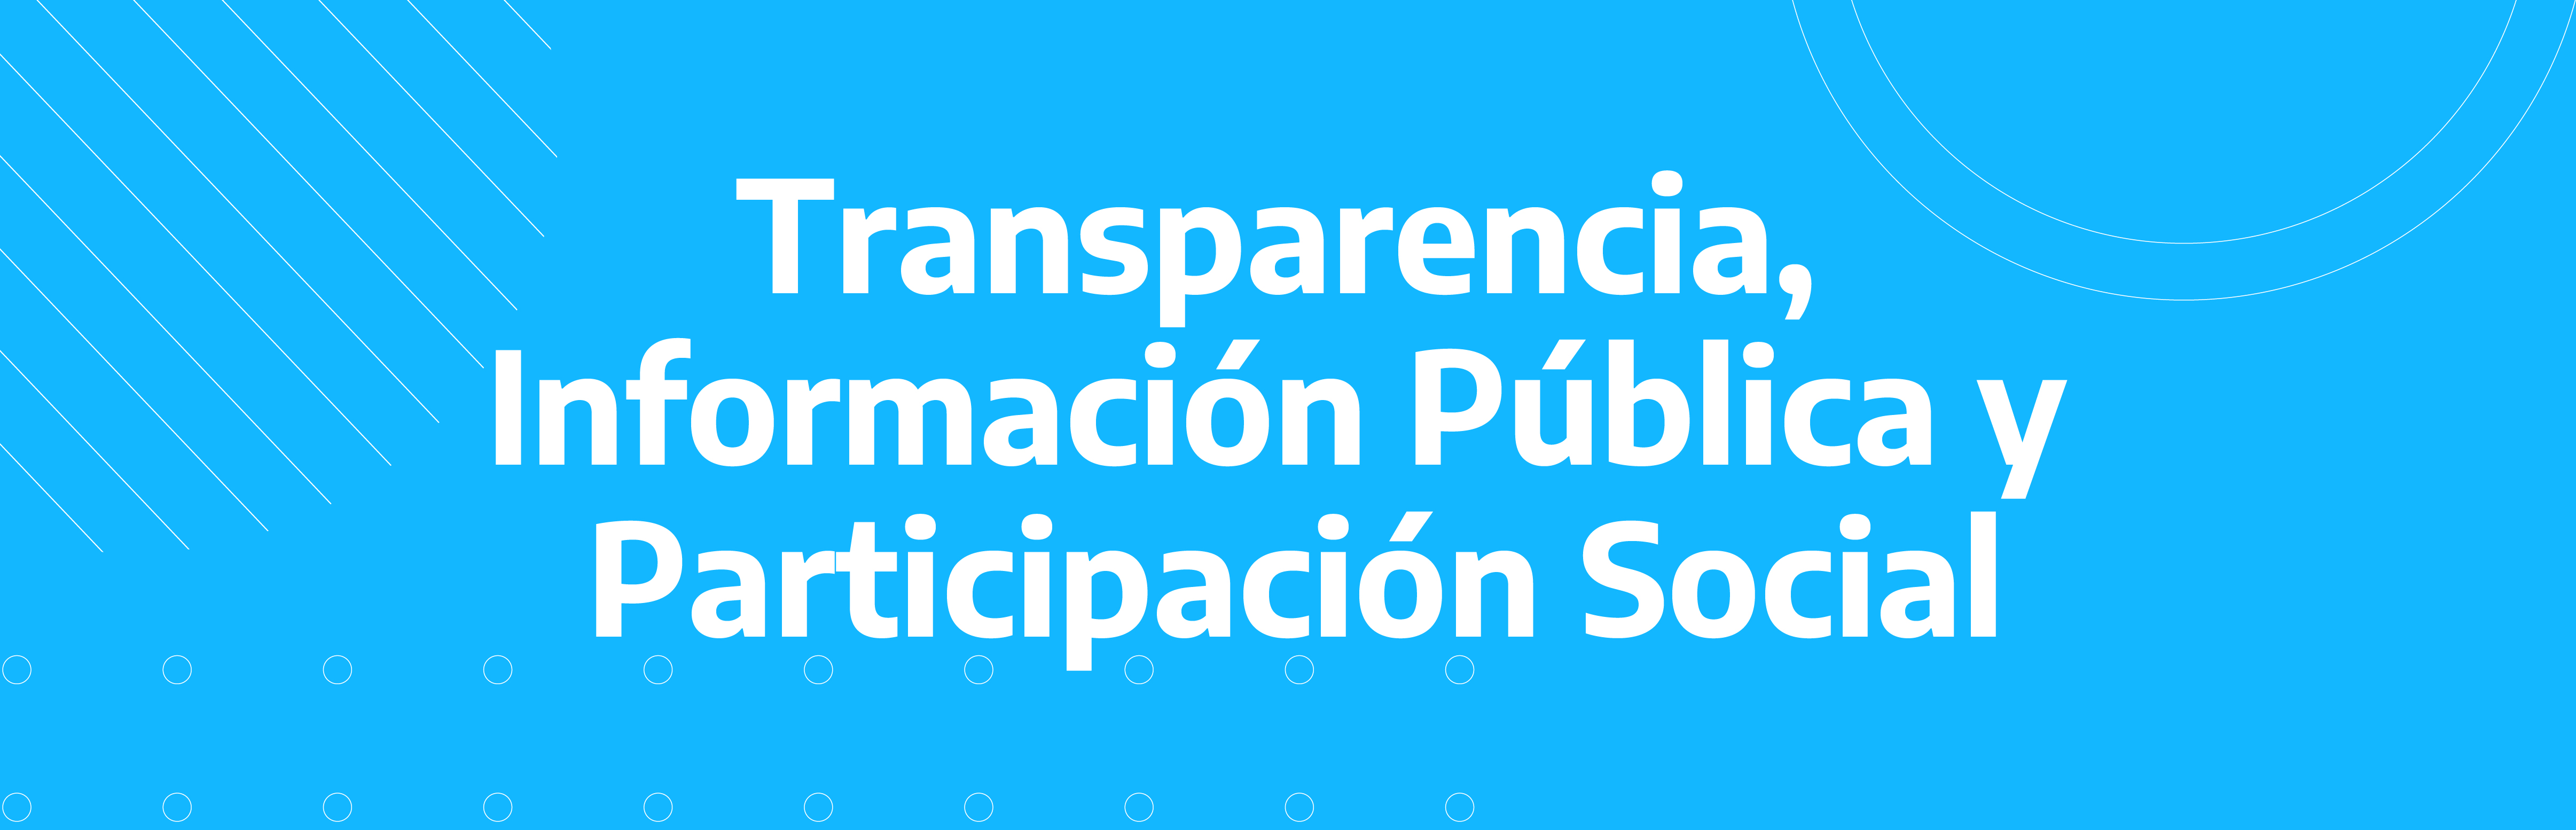 Transparencia, Información Pública y Participación Social